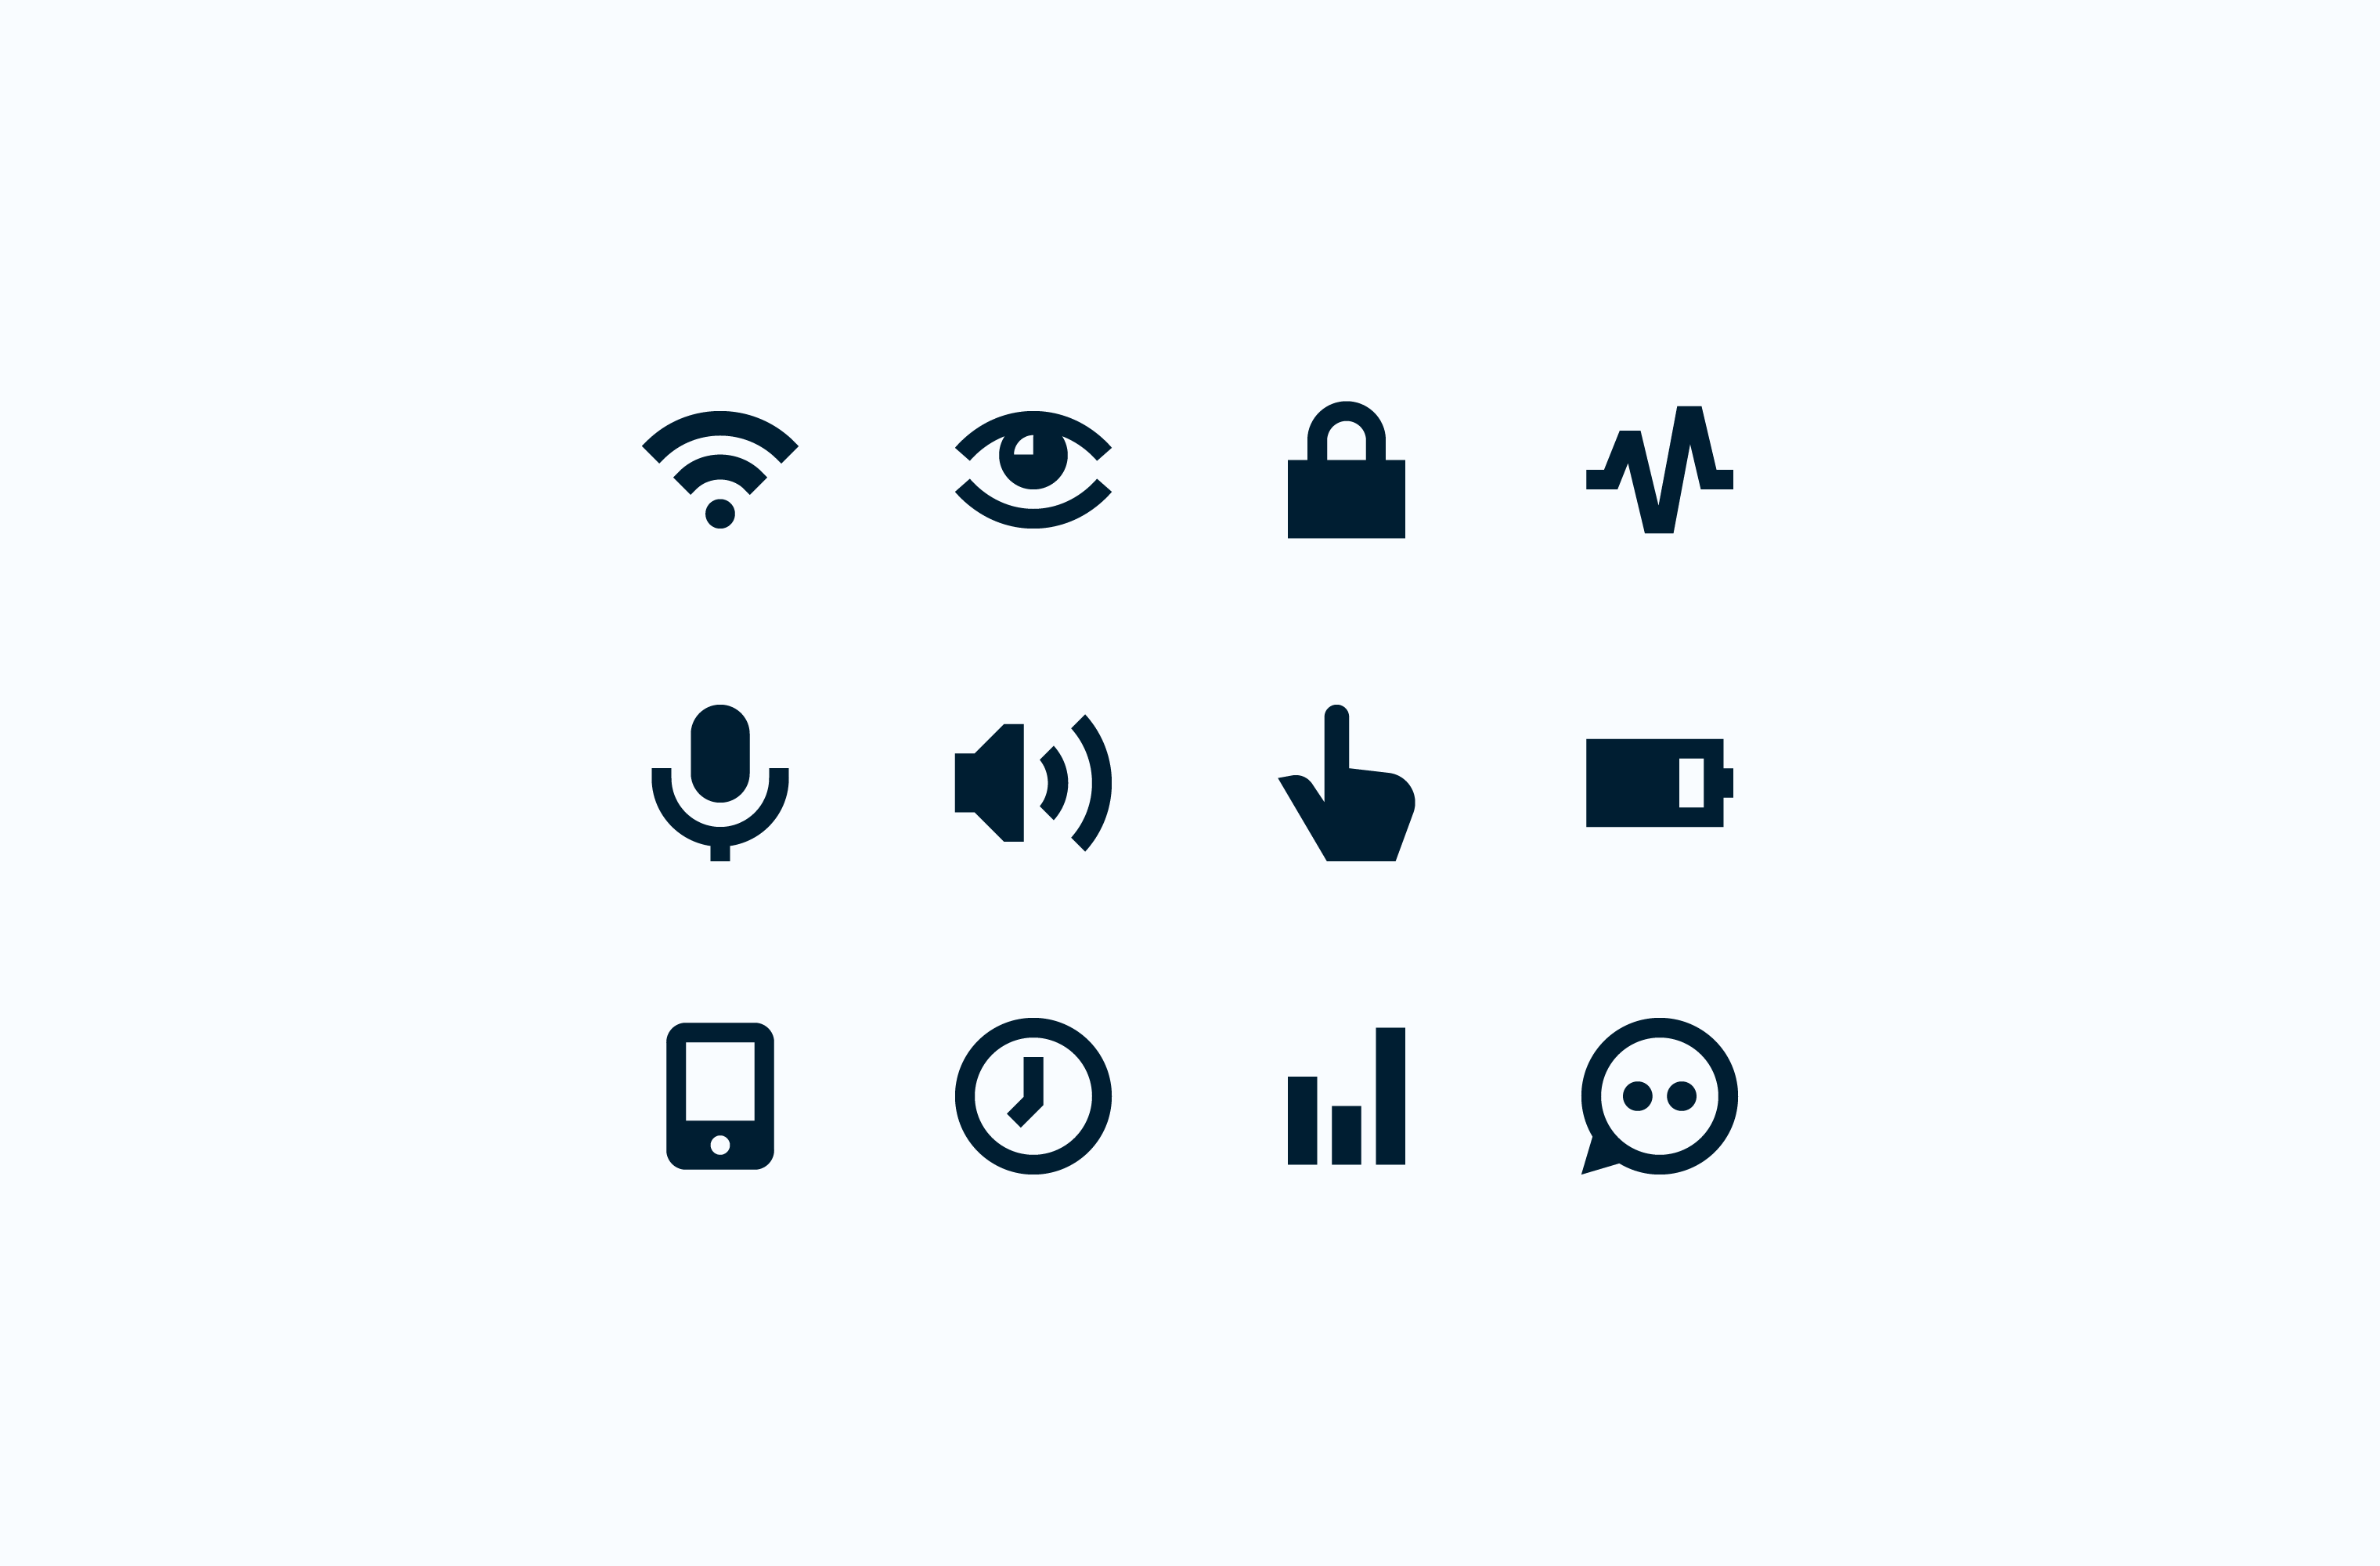 Pria user interface icon set